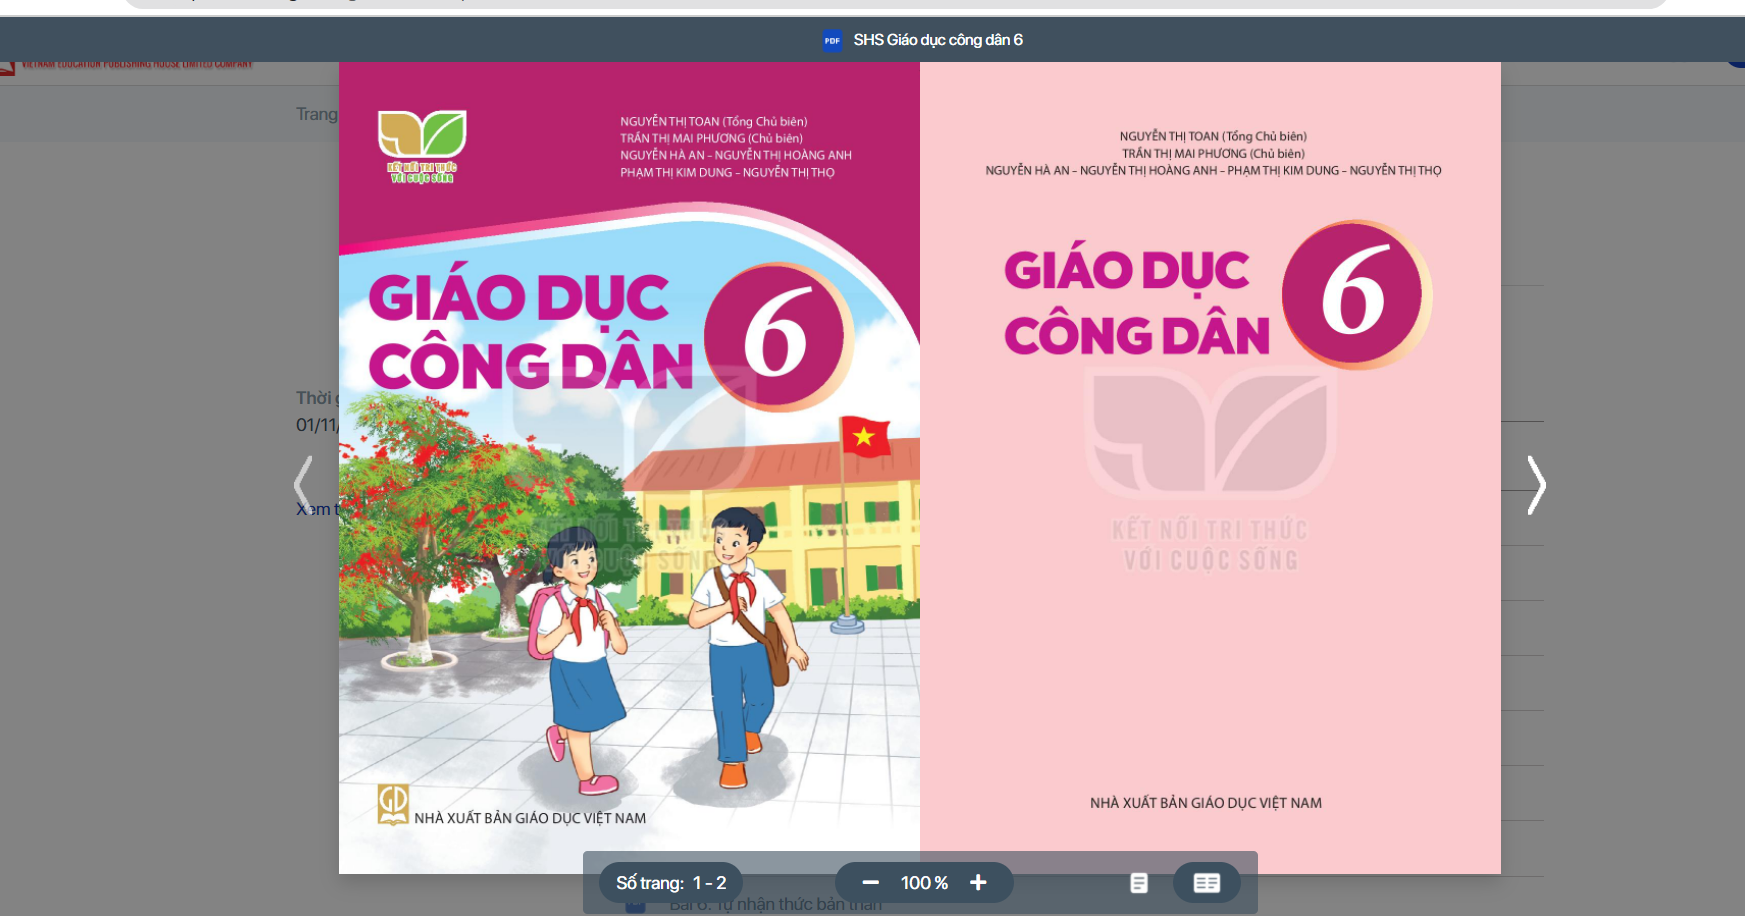 SGK Giáo dục công dân 6 Kết nối tri thức pdf | Tải PDF và xem trực tuyến | GDCD 6 (ảnh 1)